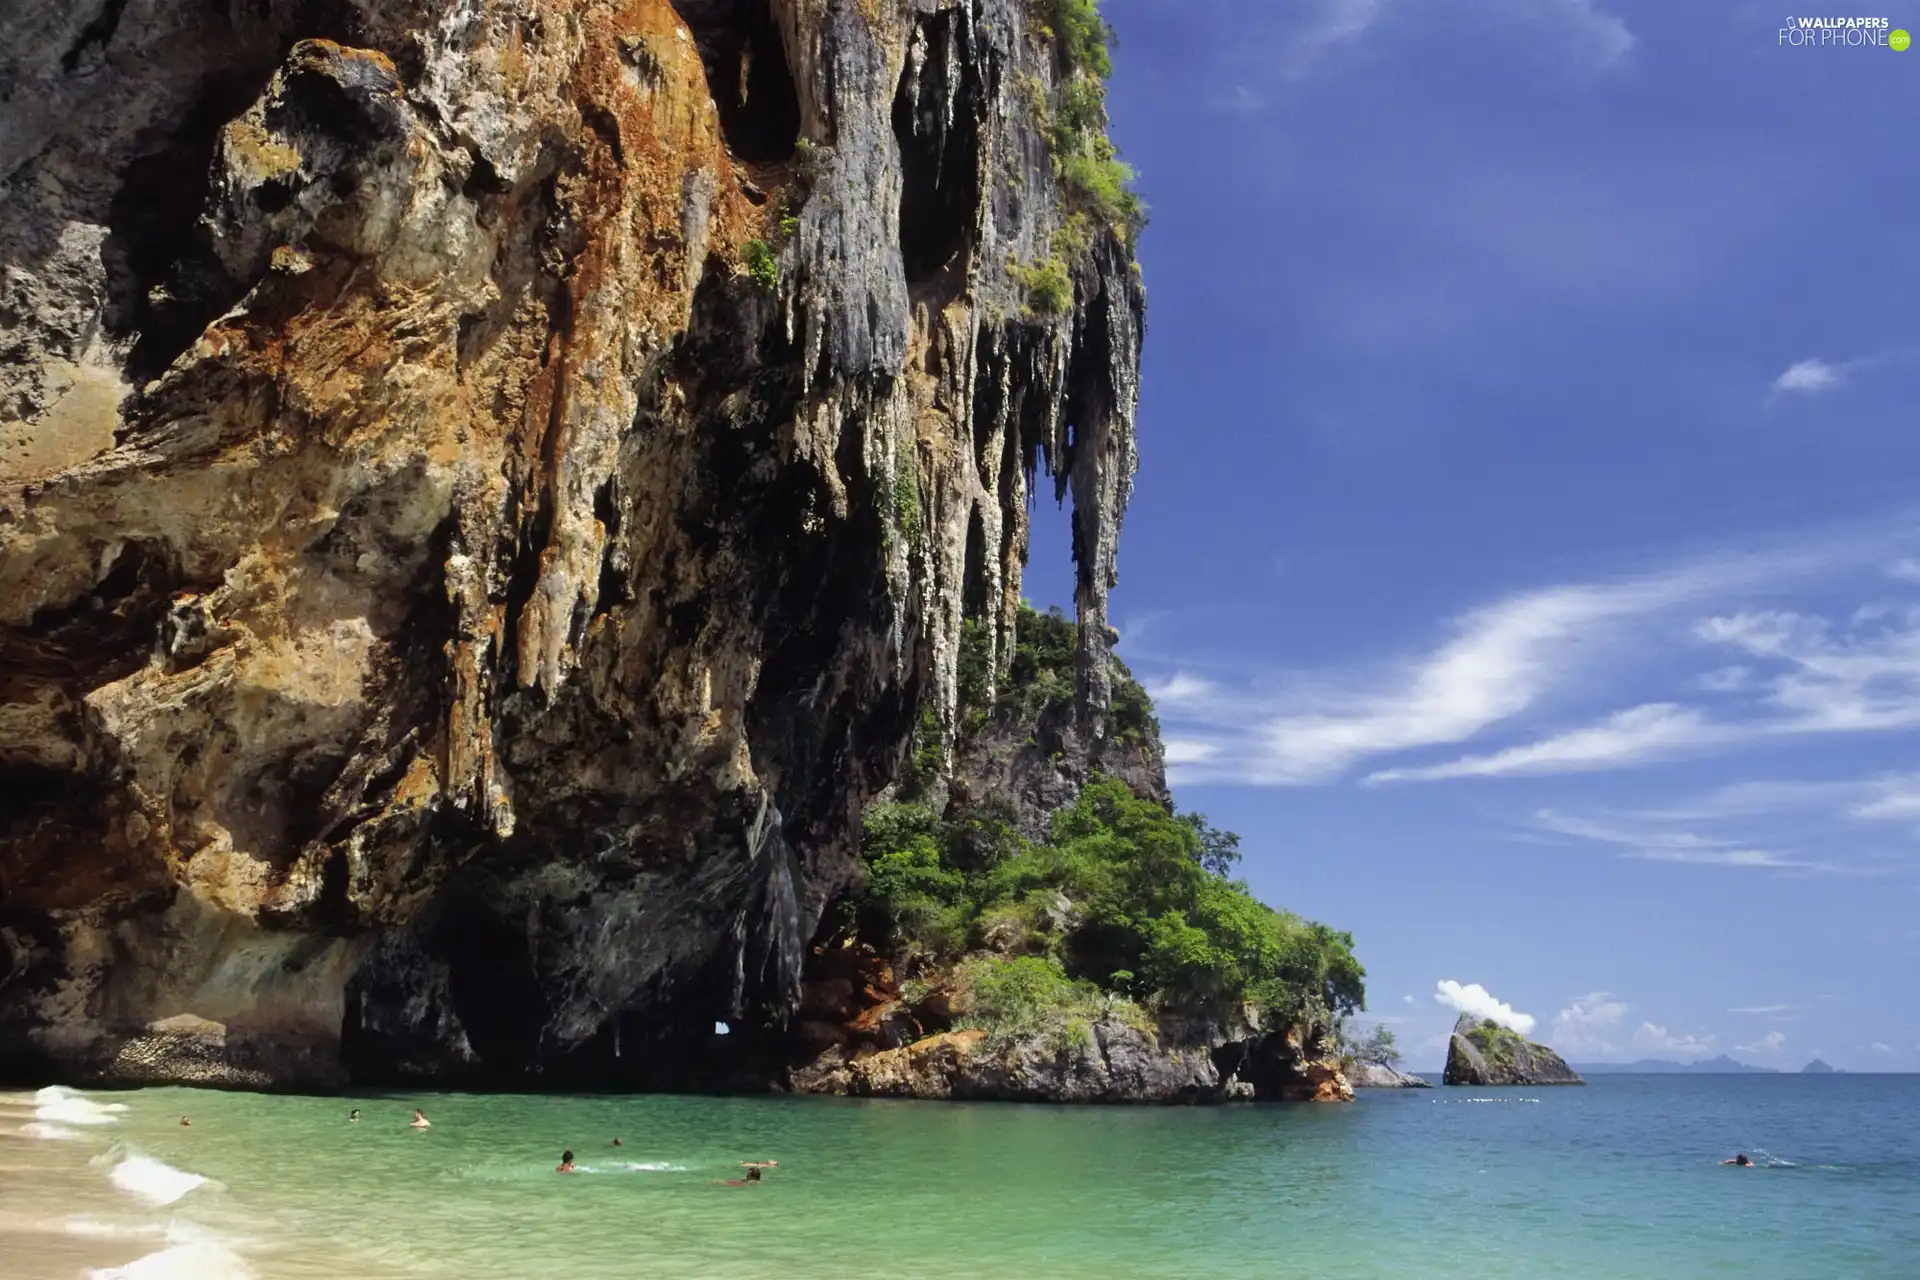 Rocks, stalactites, sea, Beaches, Thailand